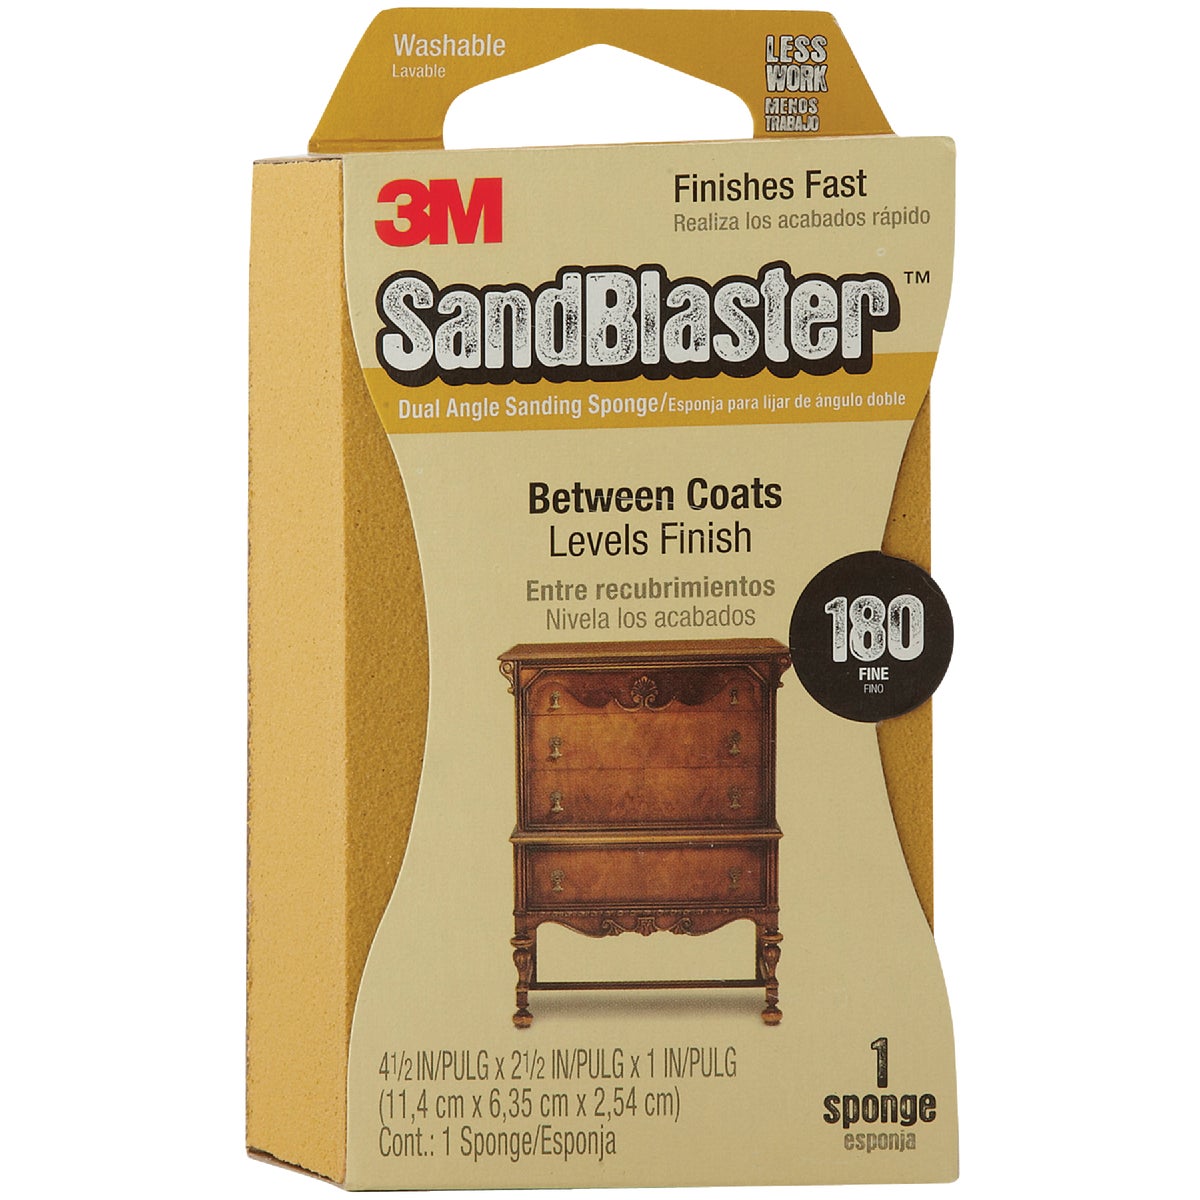 3M SandBlaster Dual Angle 2-1/2 In. x 4-1/2 In. x 1 In. 180 Grit Fine Sanding Sponge